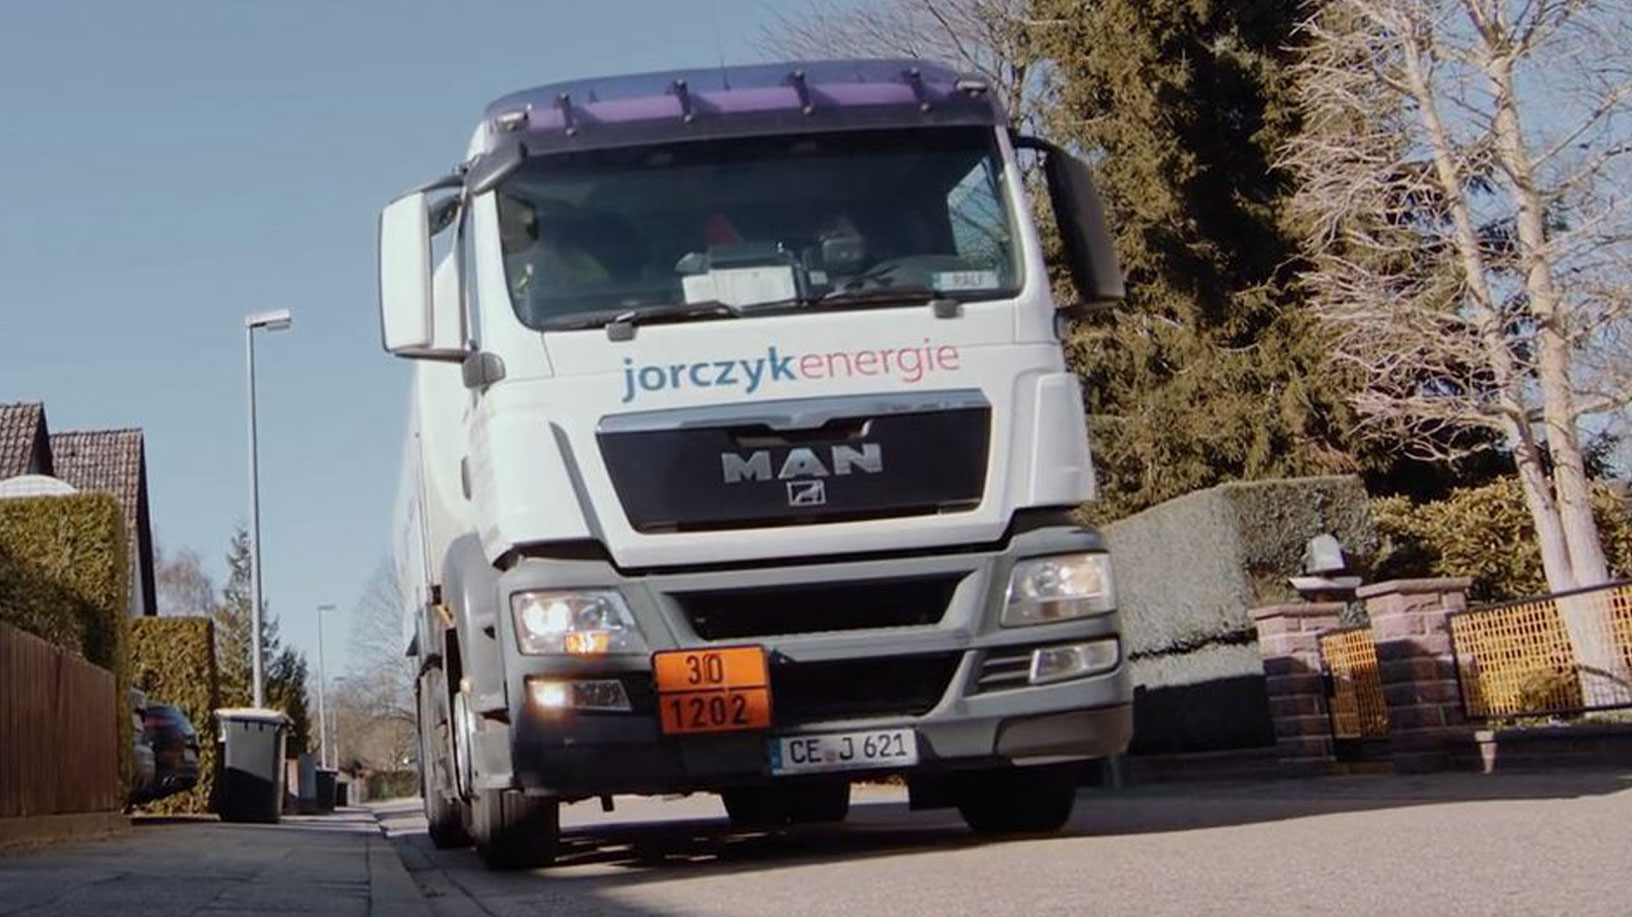 Jorczyk-Energie_Heizoel-Tankwagen02